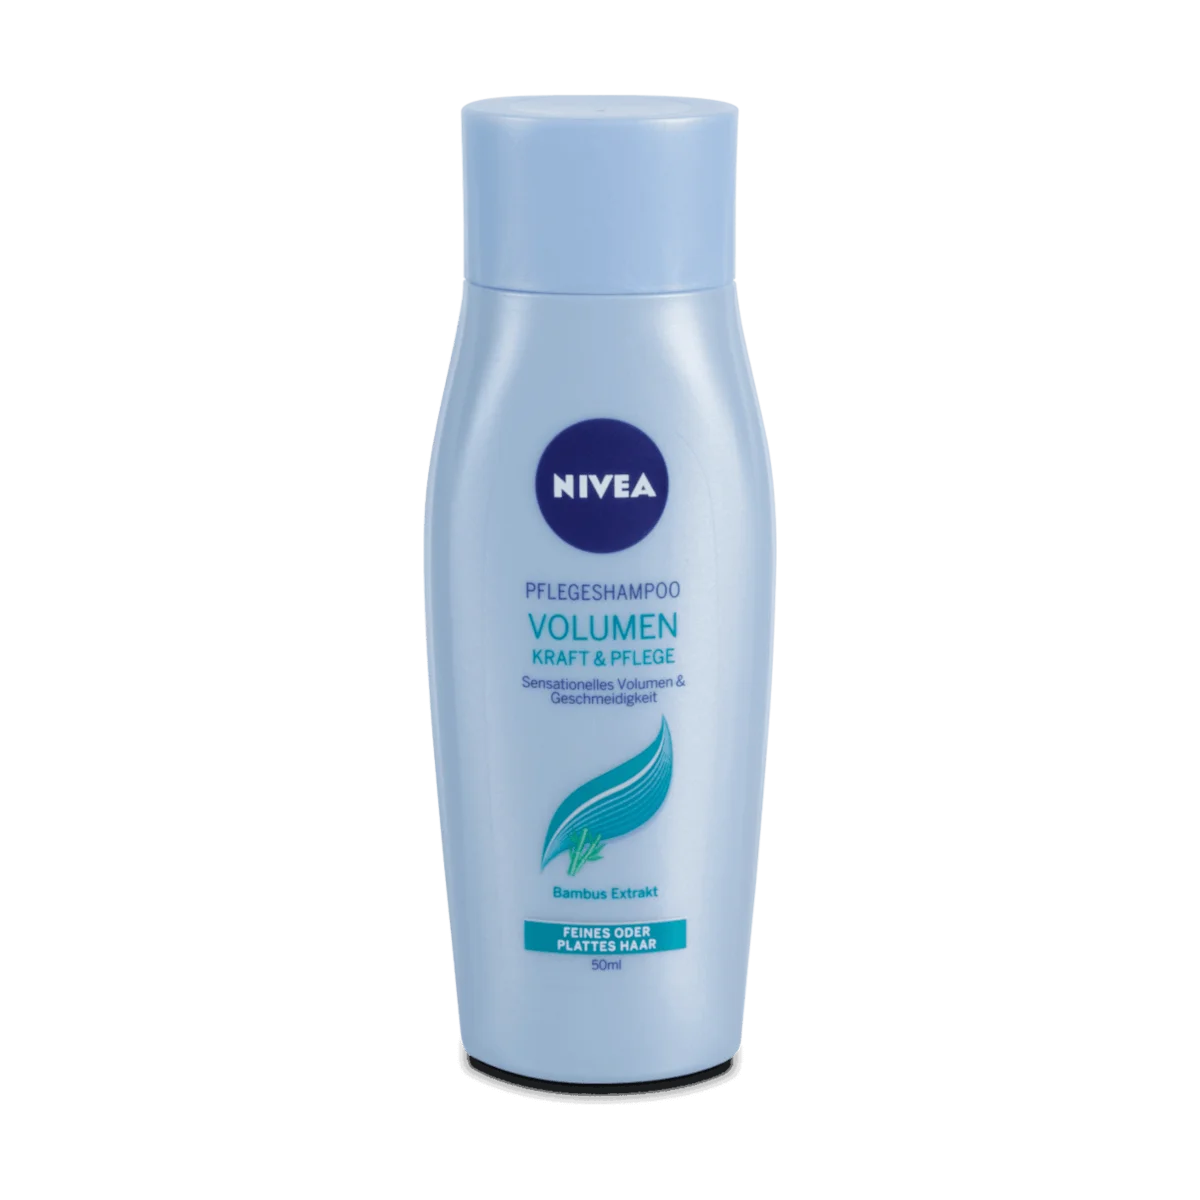 Nivea Volumen & Kraft Shampoo mini, 50 ml